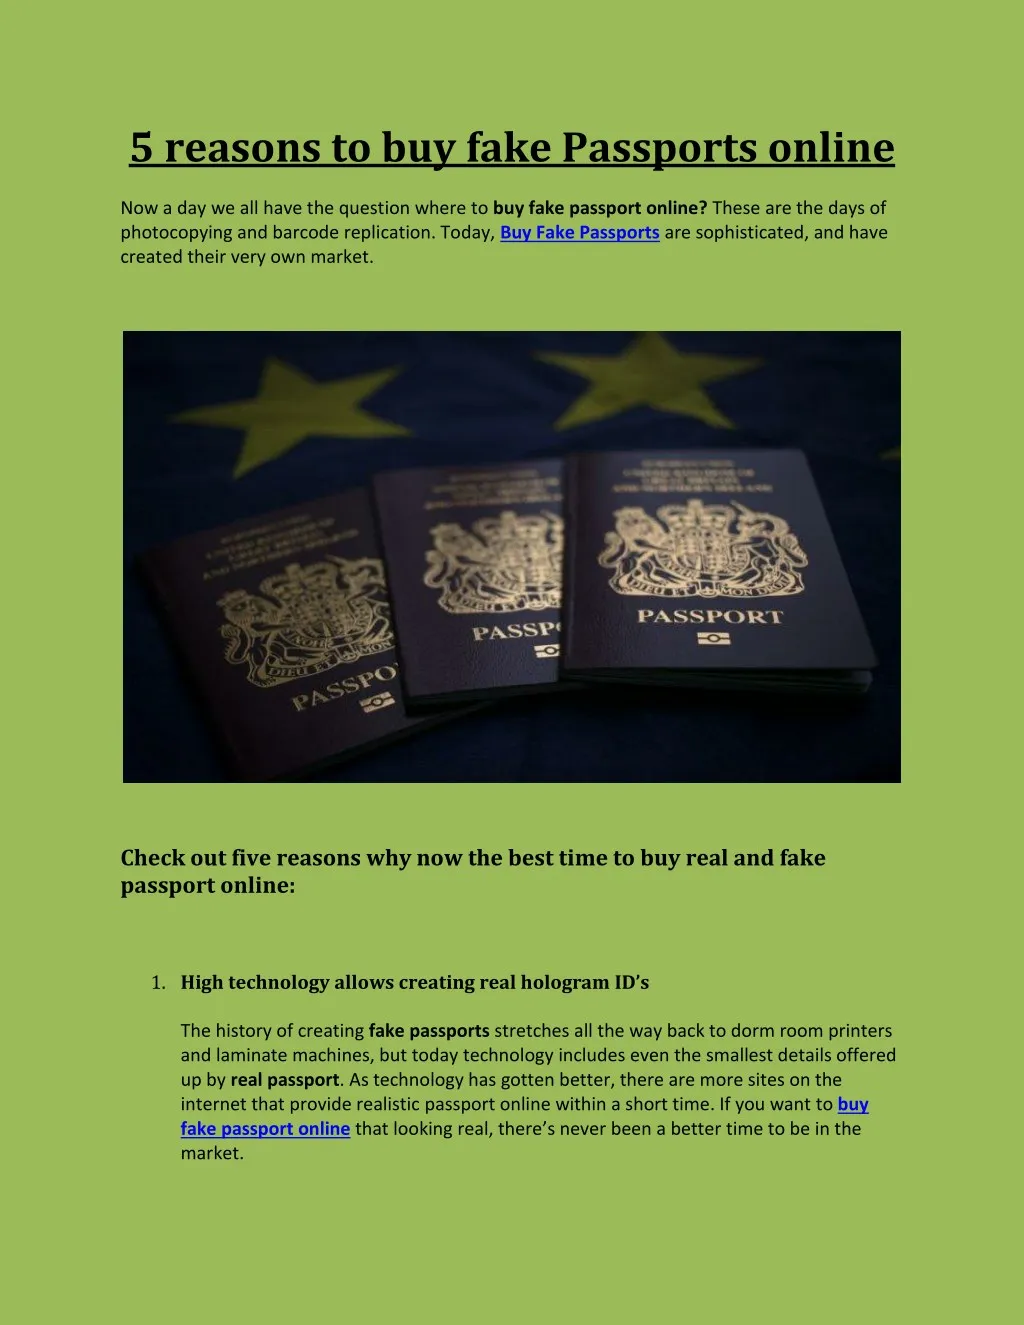 5 reasons to buy fake passports online